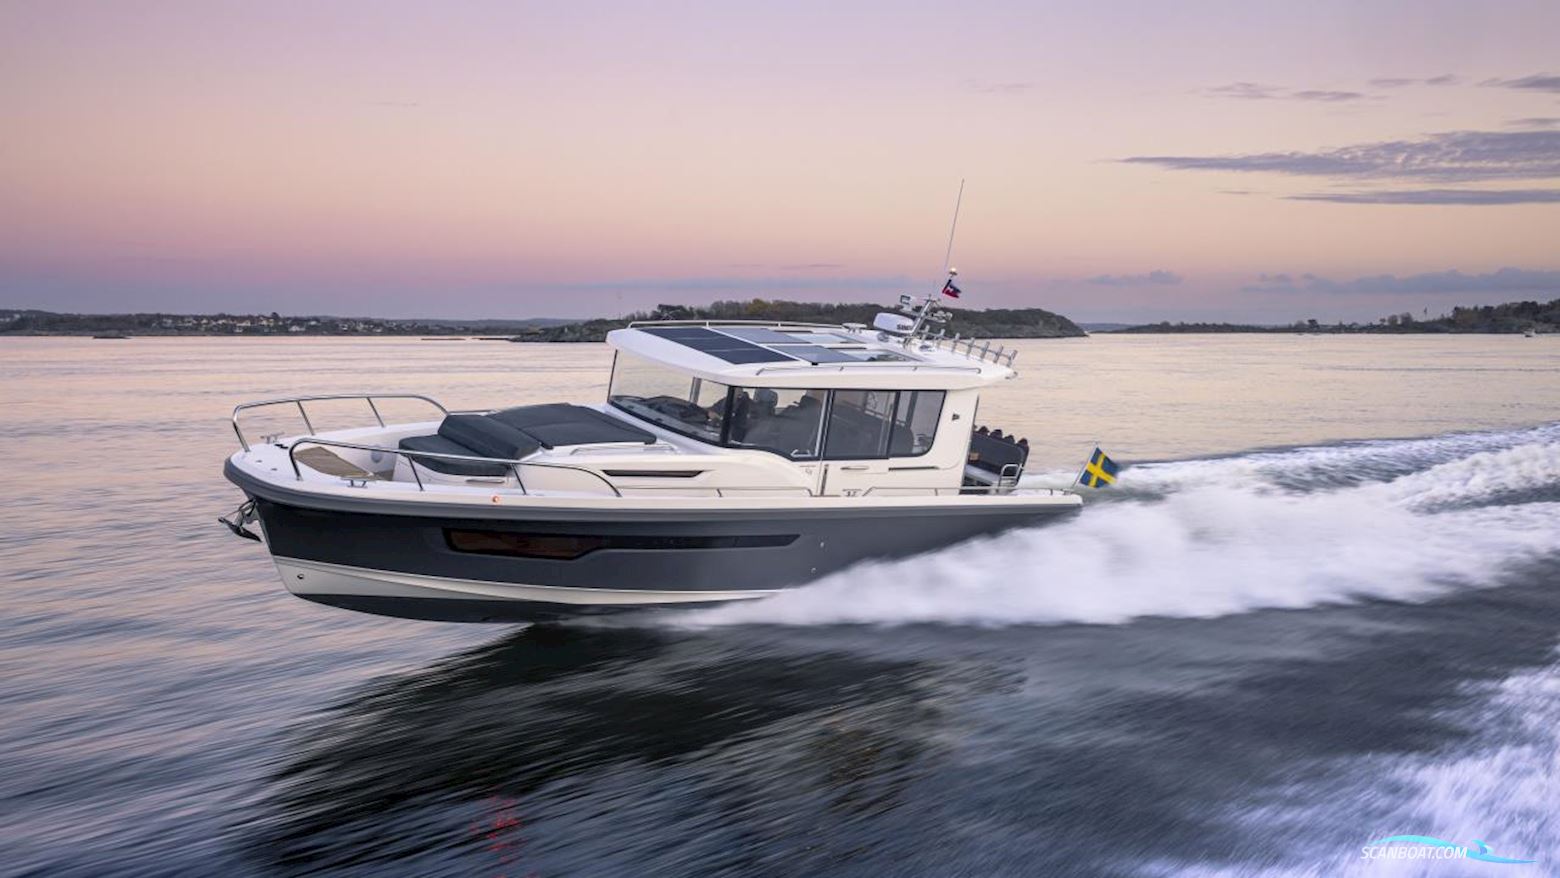 Nimbus Commuter 11 Motorbåt 2021, med  Volvo Penta motor, Sverige